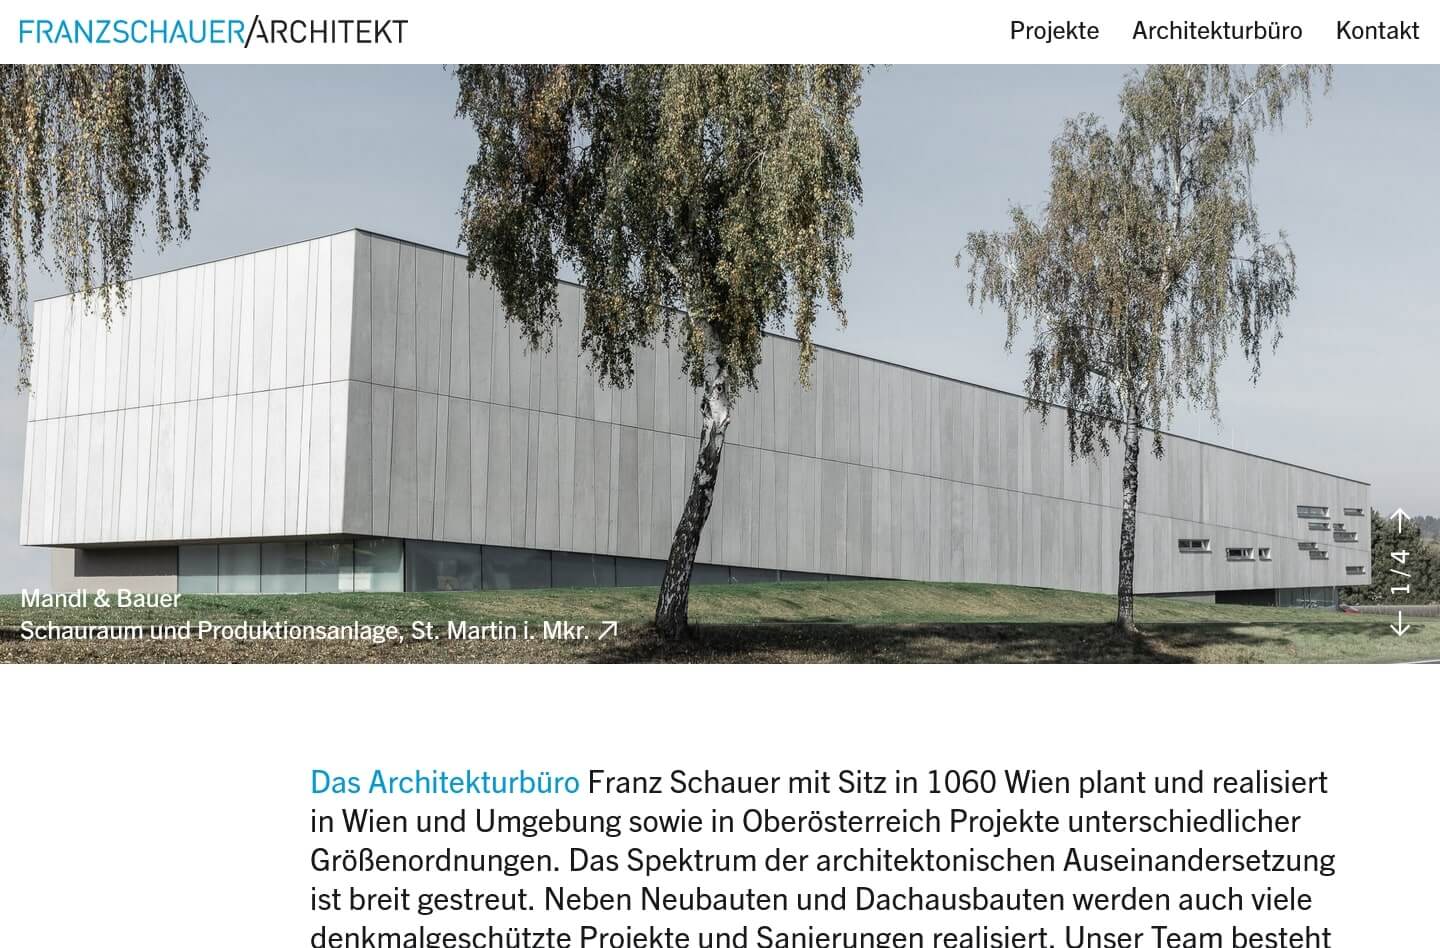 Architekt Schauer